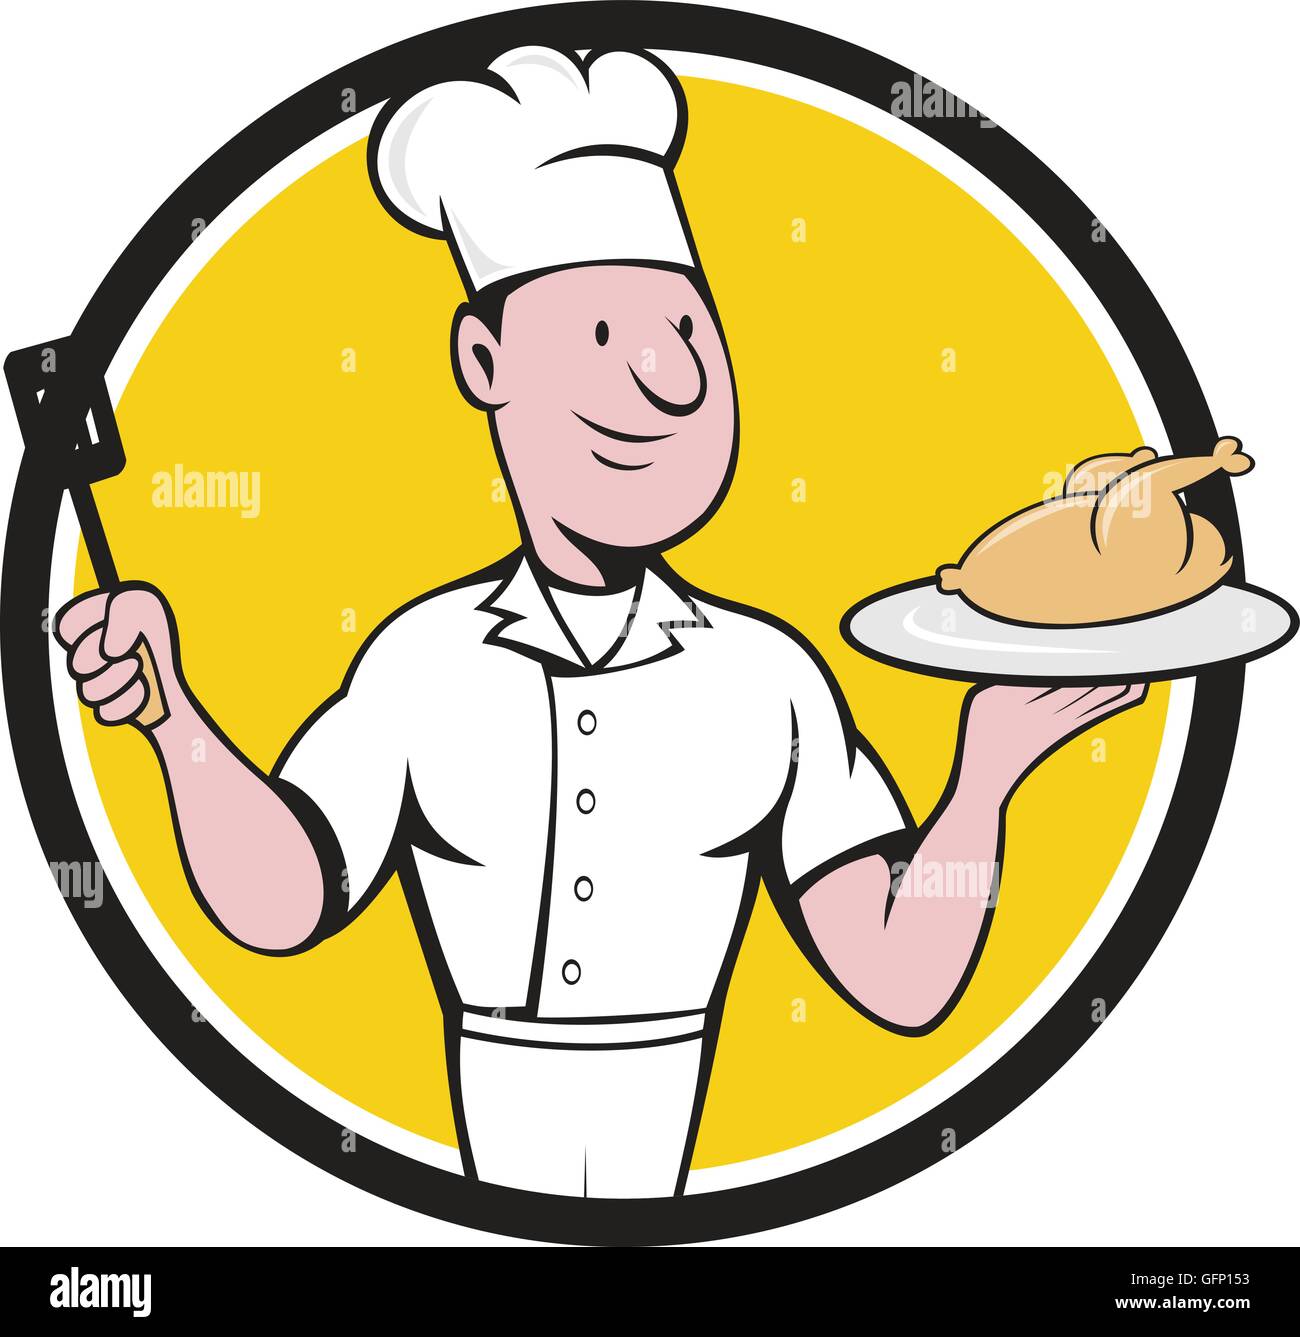 Abbildung eines Küchenchefs Kochen servieren Brathähnchen auf einer Platte einerseits und mit einem Spatel auf der anderen Seite betrachtet, von vorne im inneren Kreis auf isolierte Hintergrund getan im Cartoon-Stil festgelegt. Stock Vektor